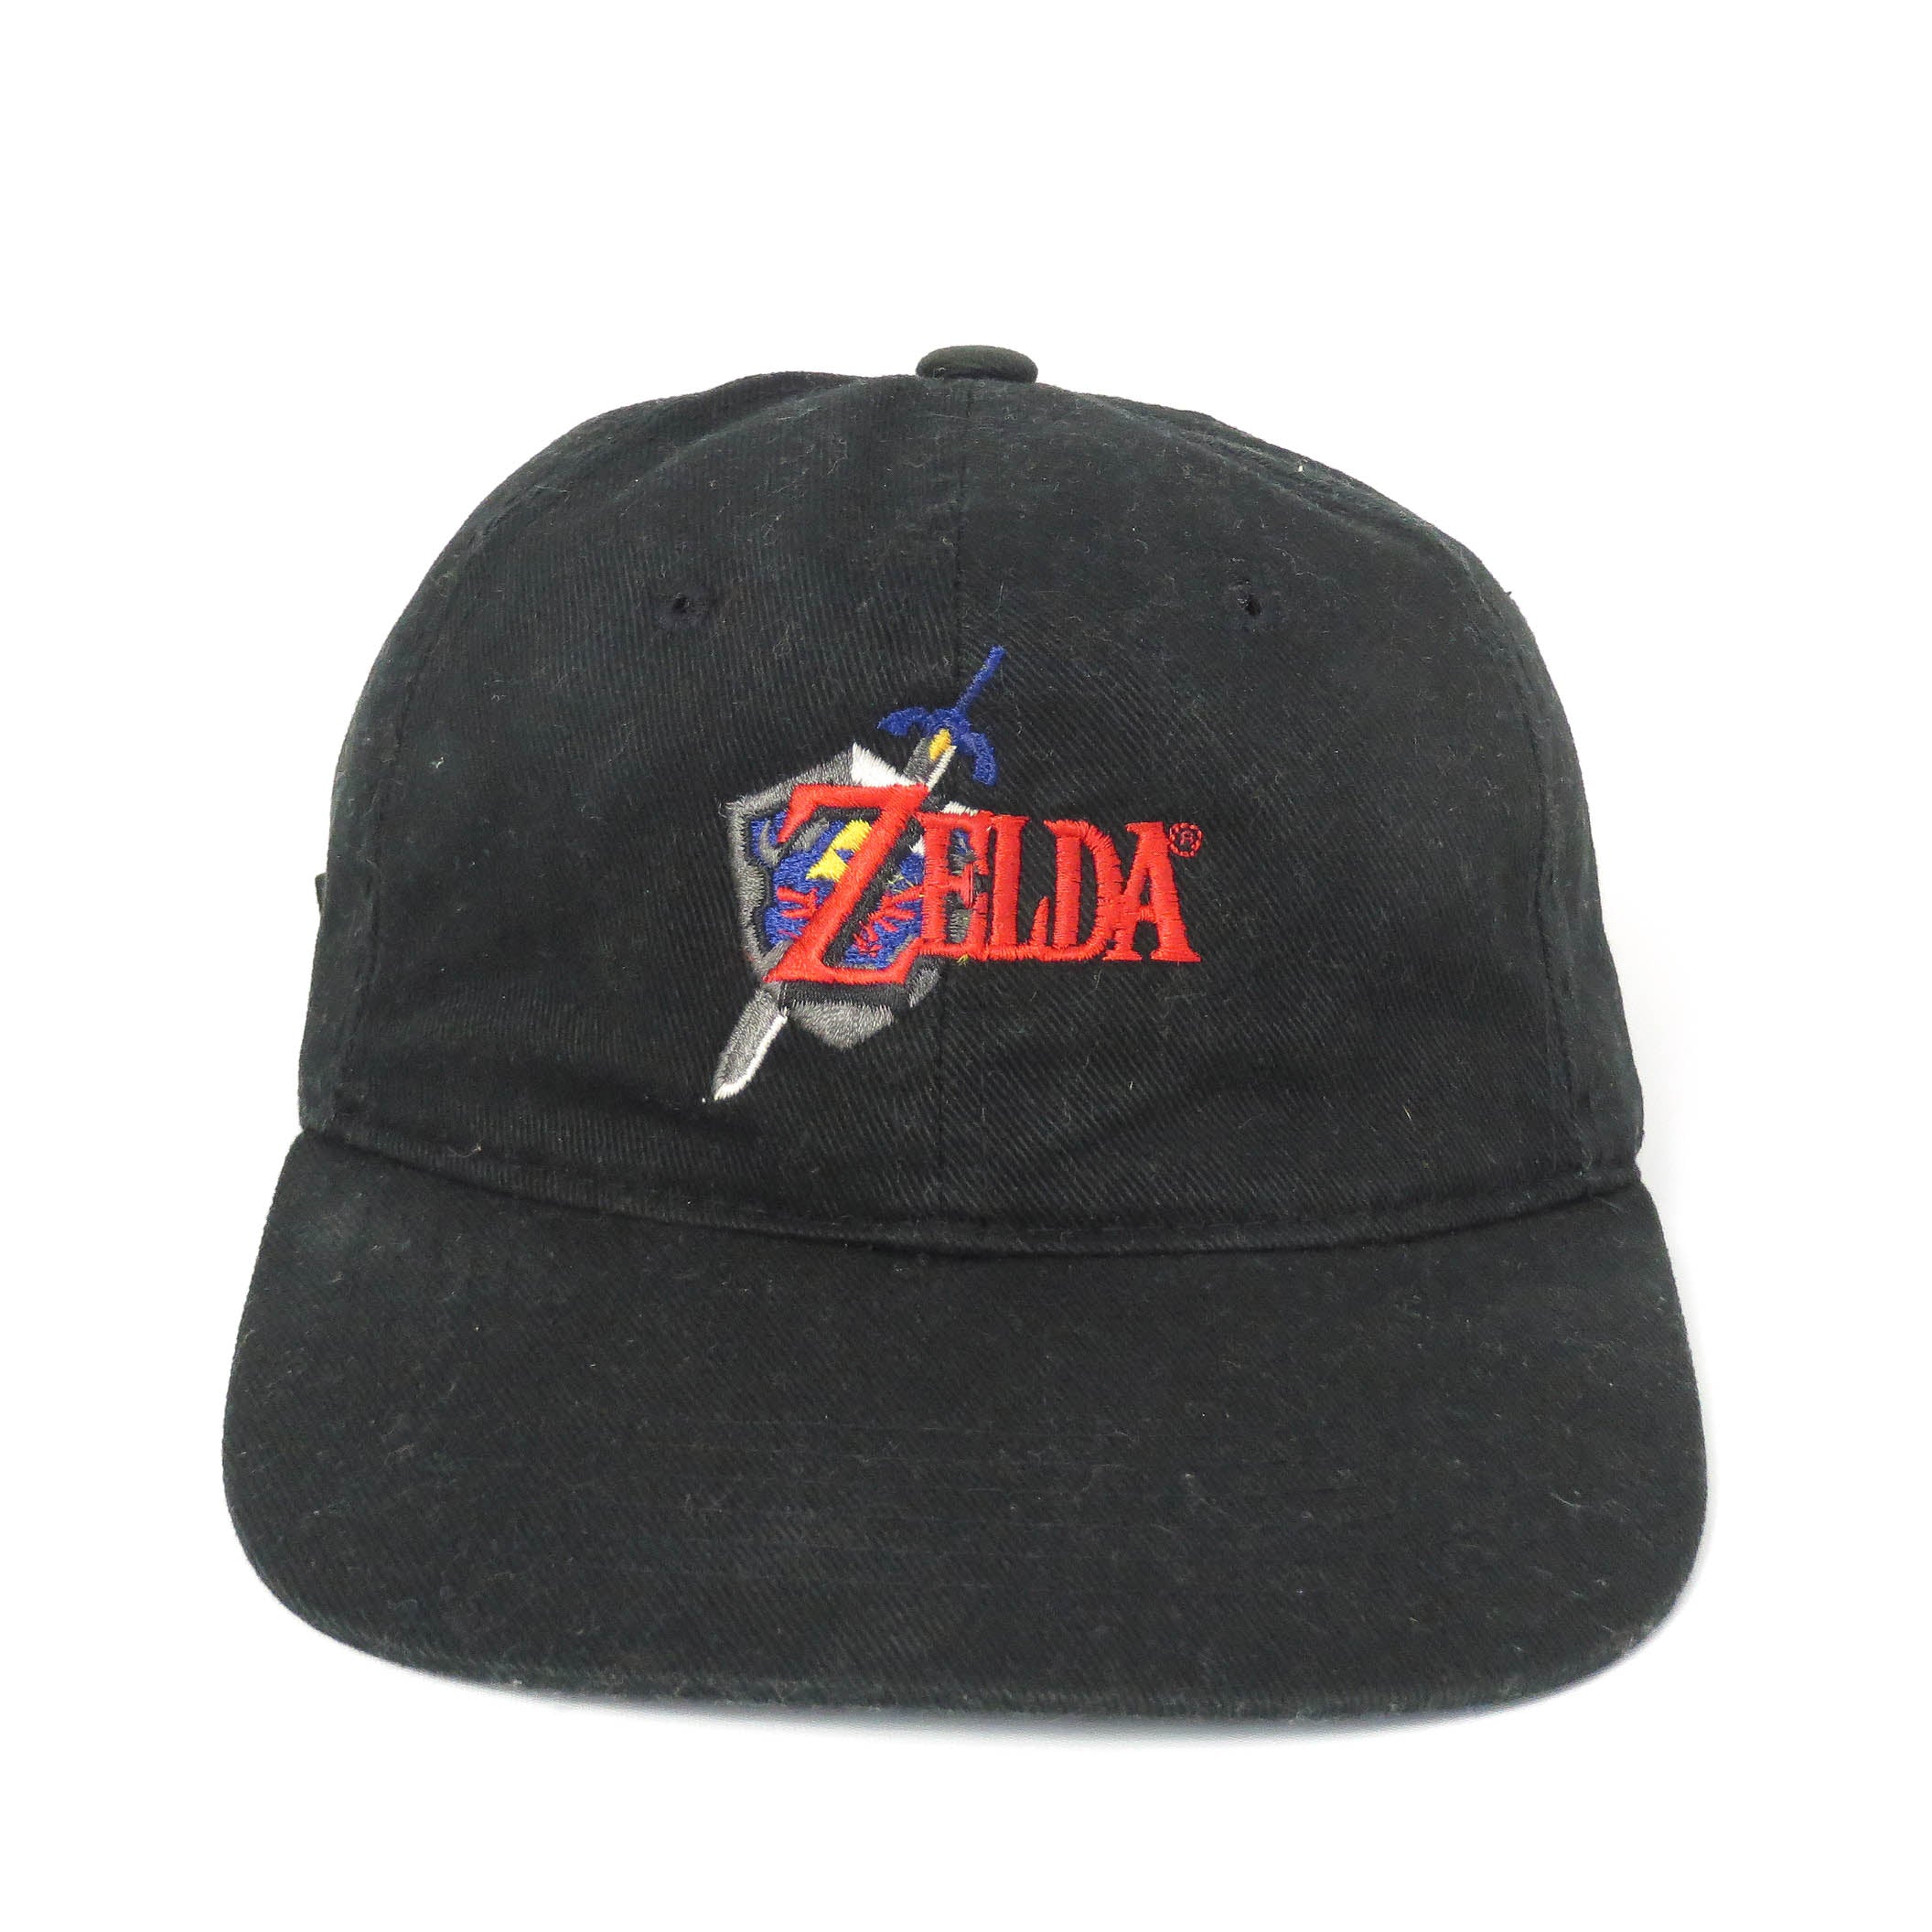 Vintage 1998 Zelda Nintendo 64 Strapback Hat